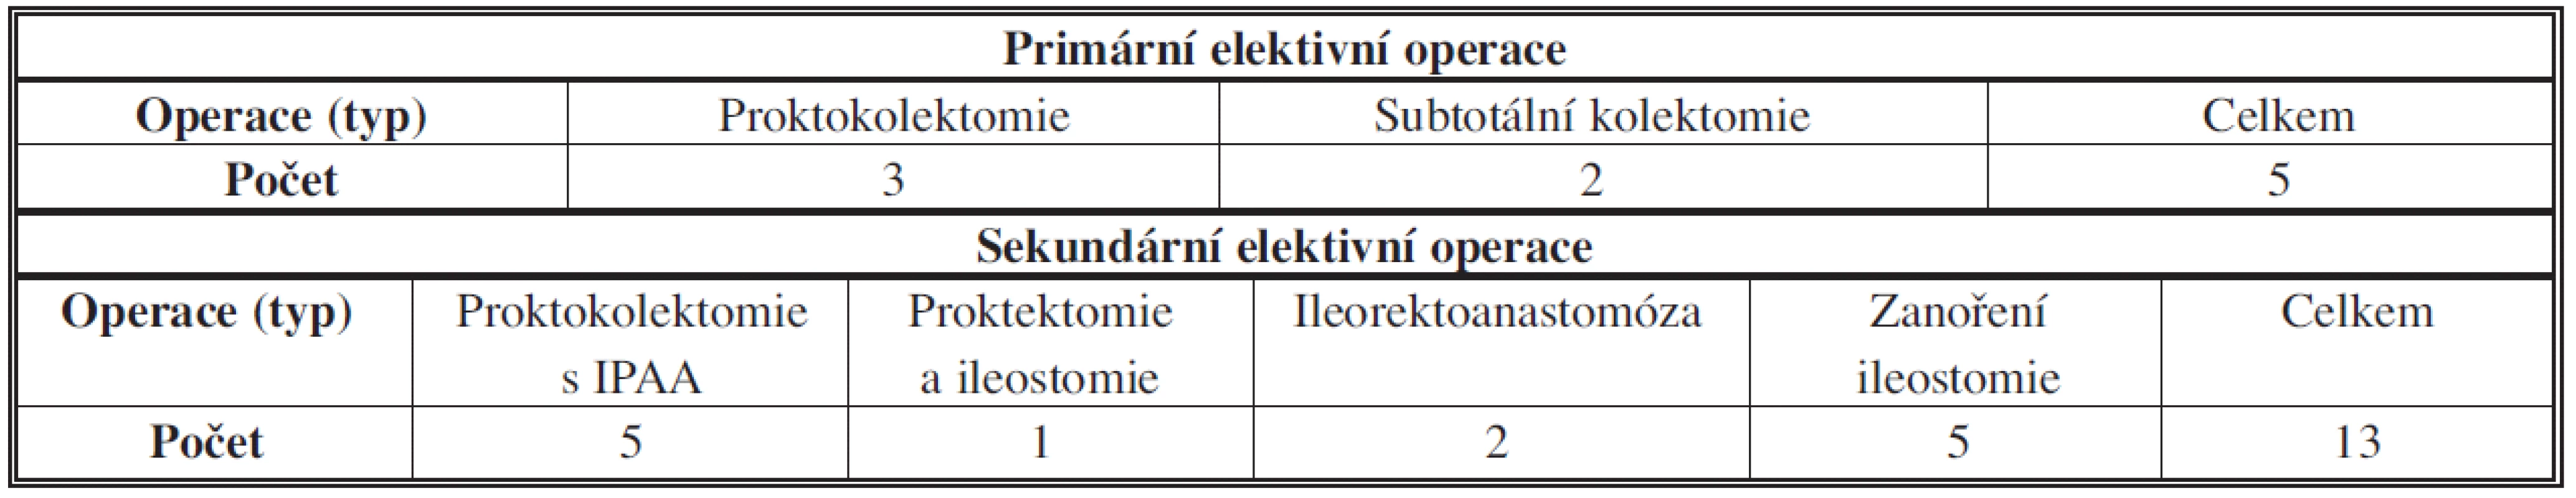 Ulcerózní kolitida – plánované operace – typy operačních výkonů
Tab. 6: Ulcerative colitis – elective surgery – types of operations